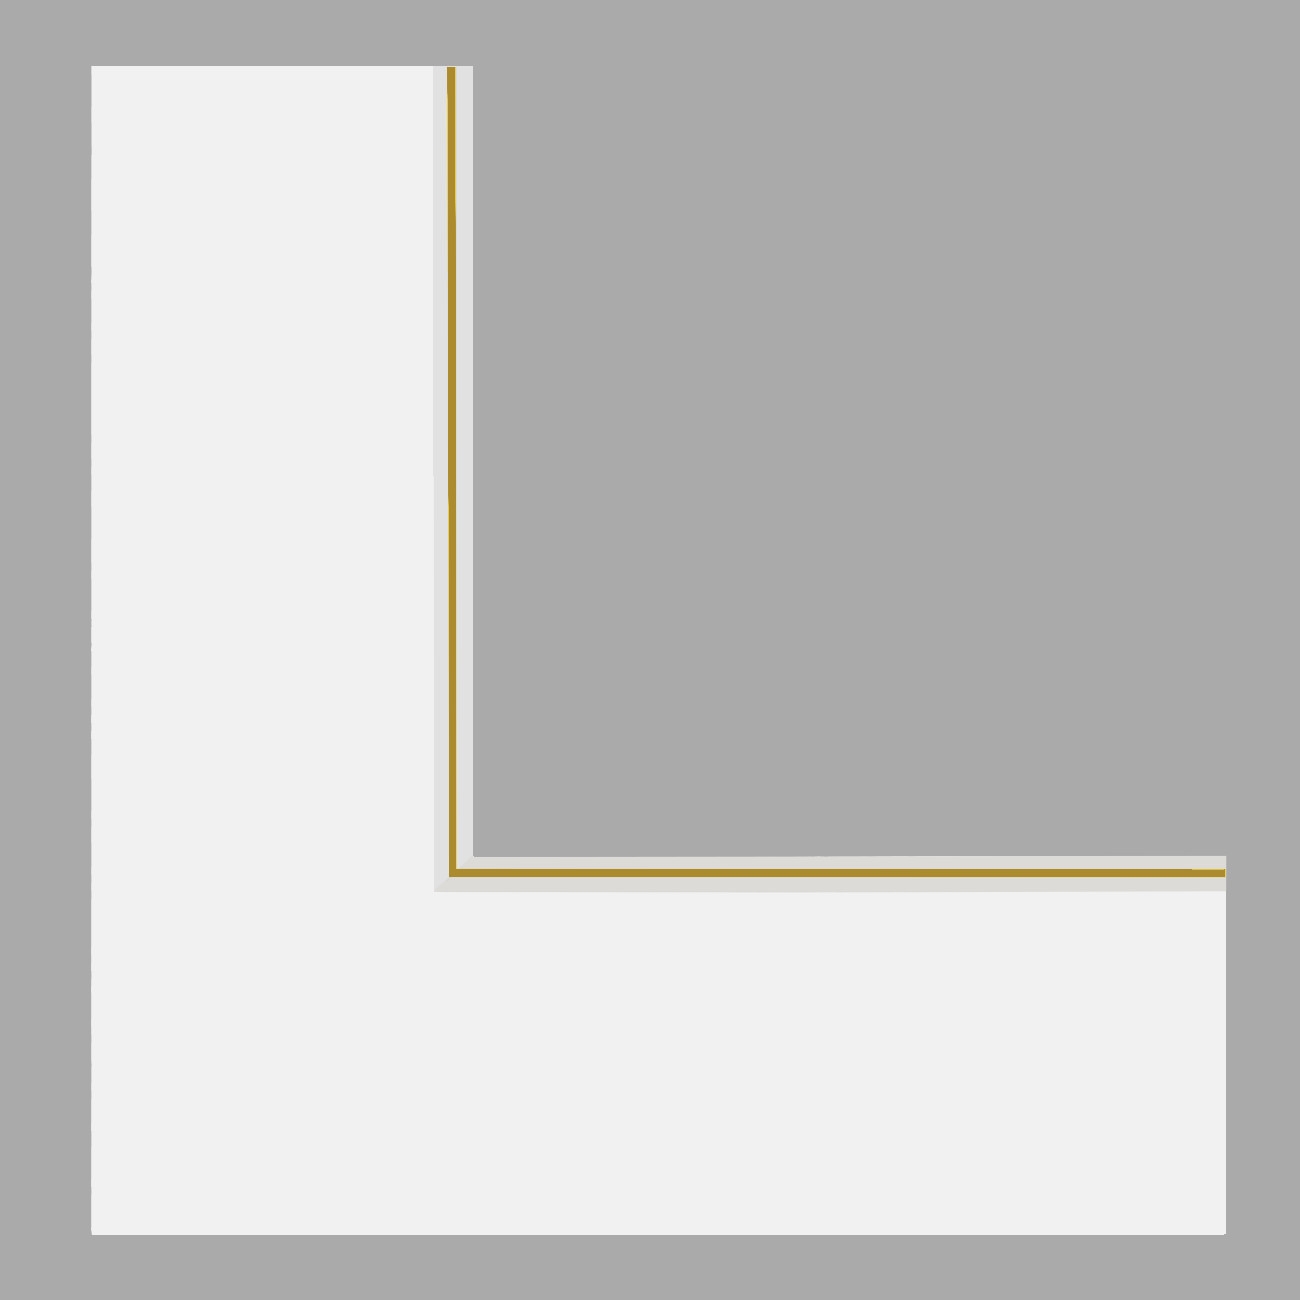 Passe double passe-partout blanc cassé, filet or, âme blanche (2x1,4mm d'épaisseur, ph neutre) - 30x30